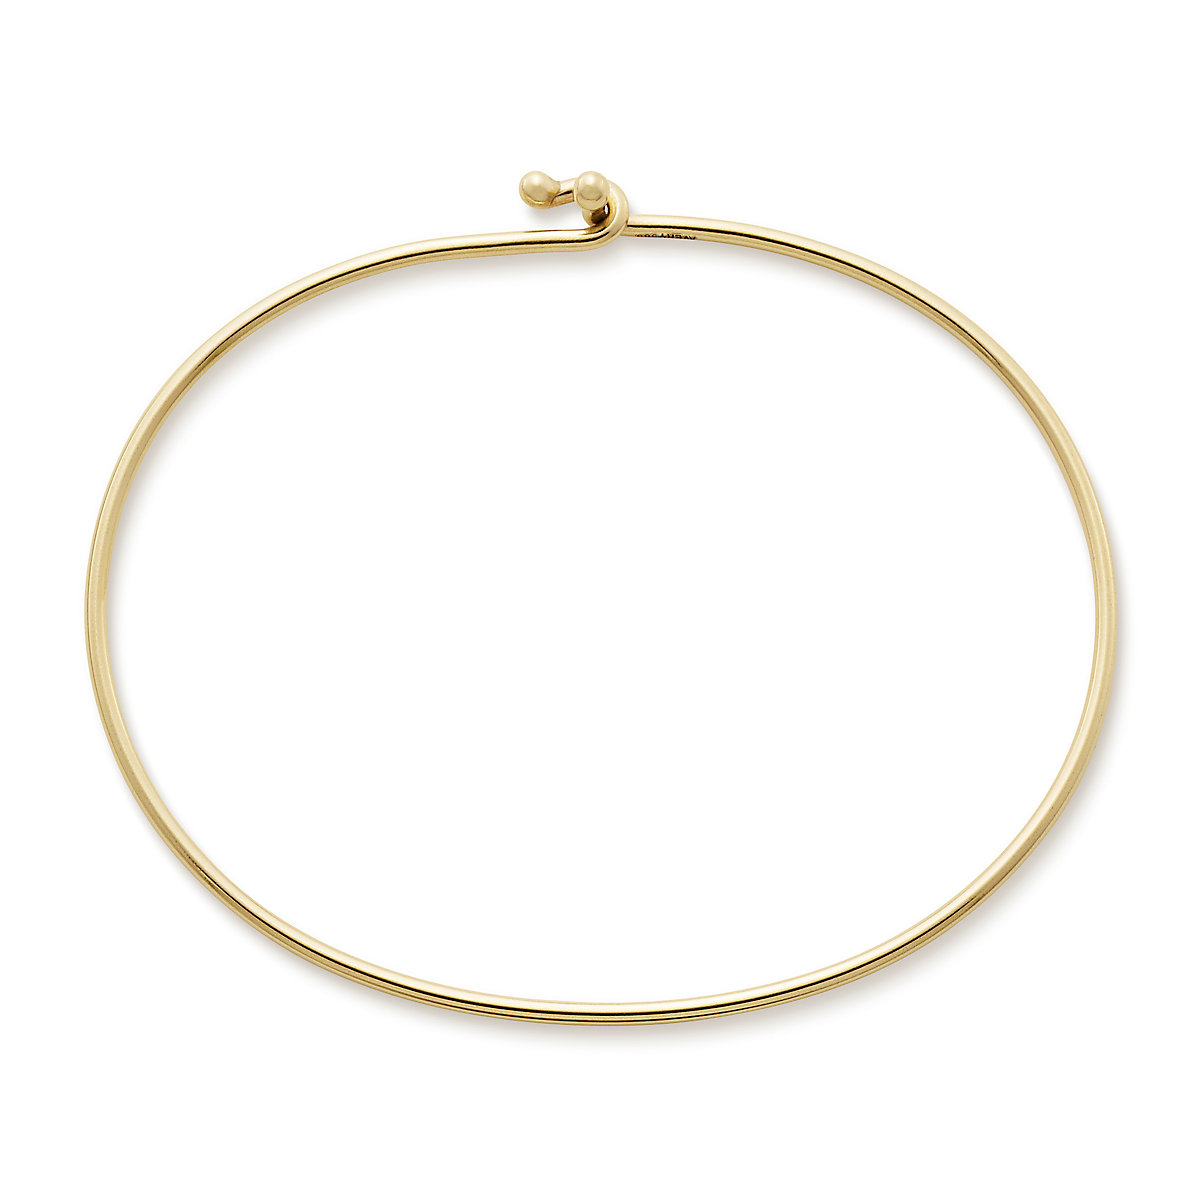 Chastity Charm On A 6 1/4 Inch Oval Eye Hook Bangle Bracelet